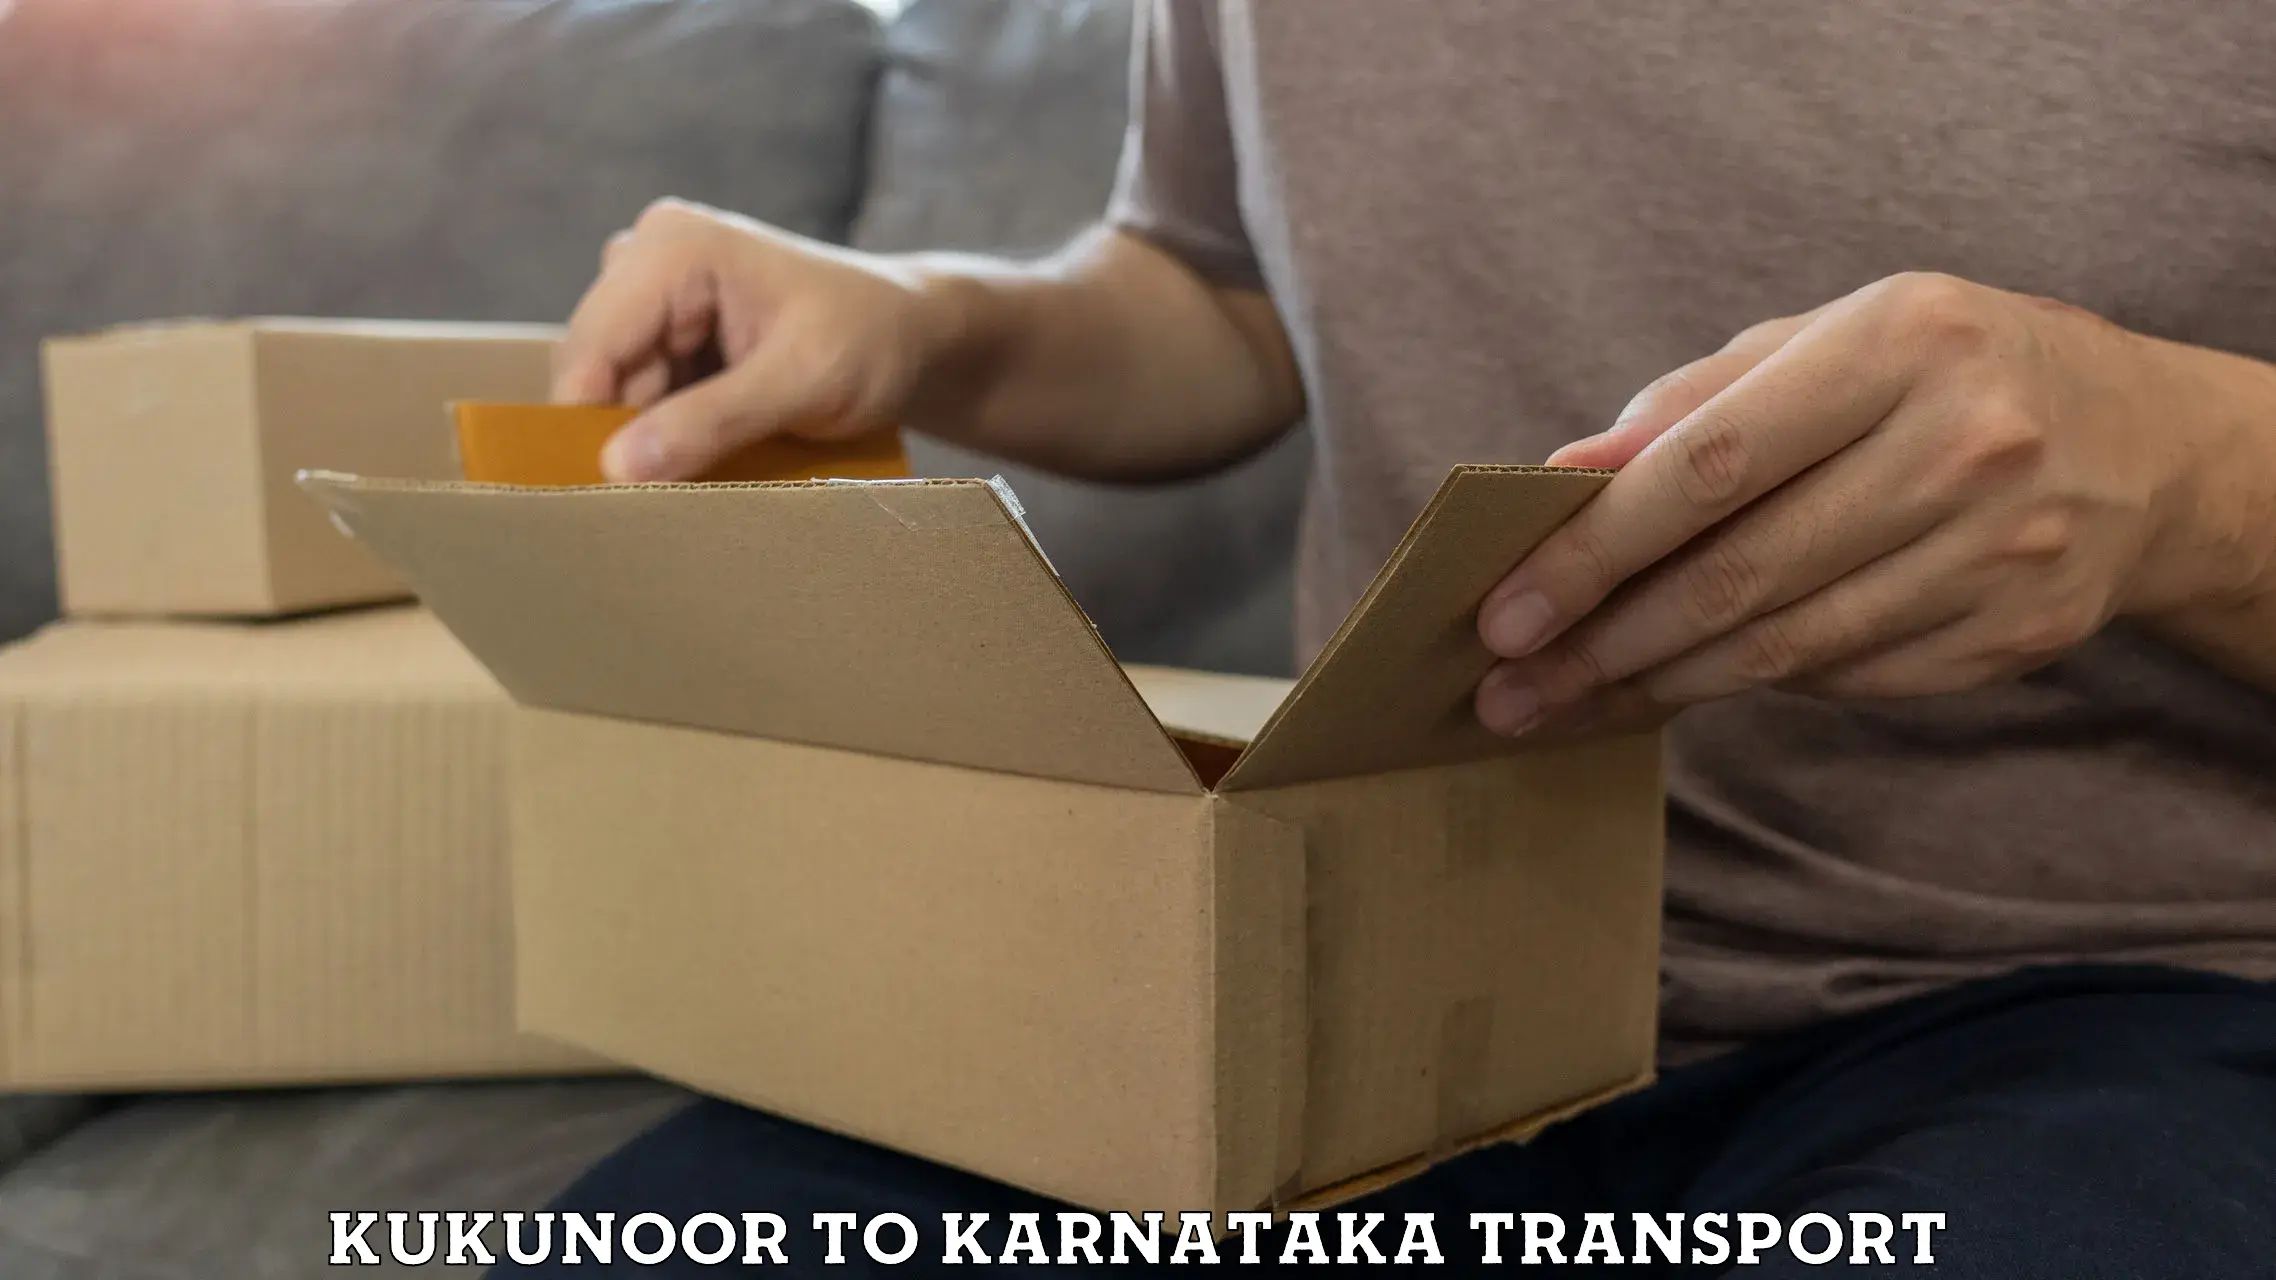 Furniture transport service Kukunoor to Hiriyur